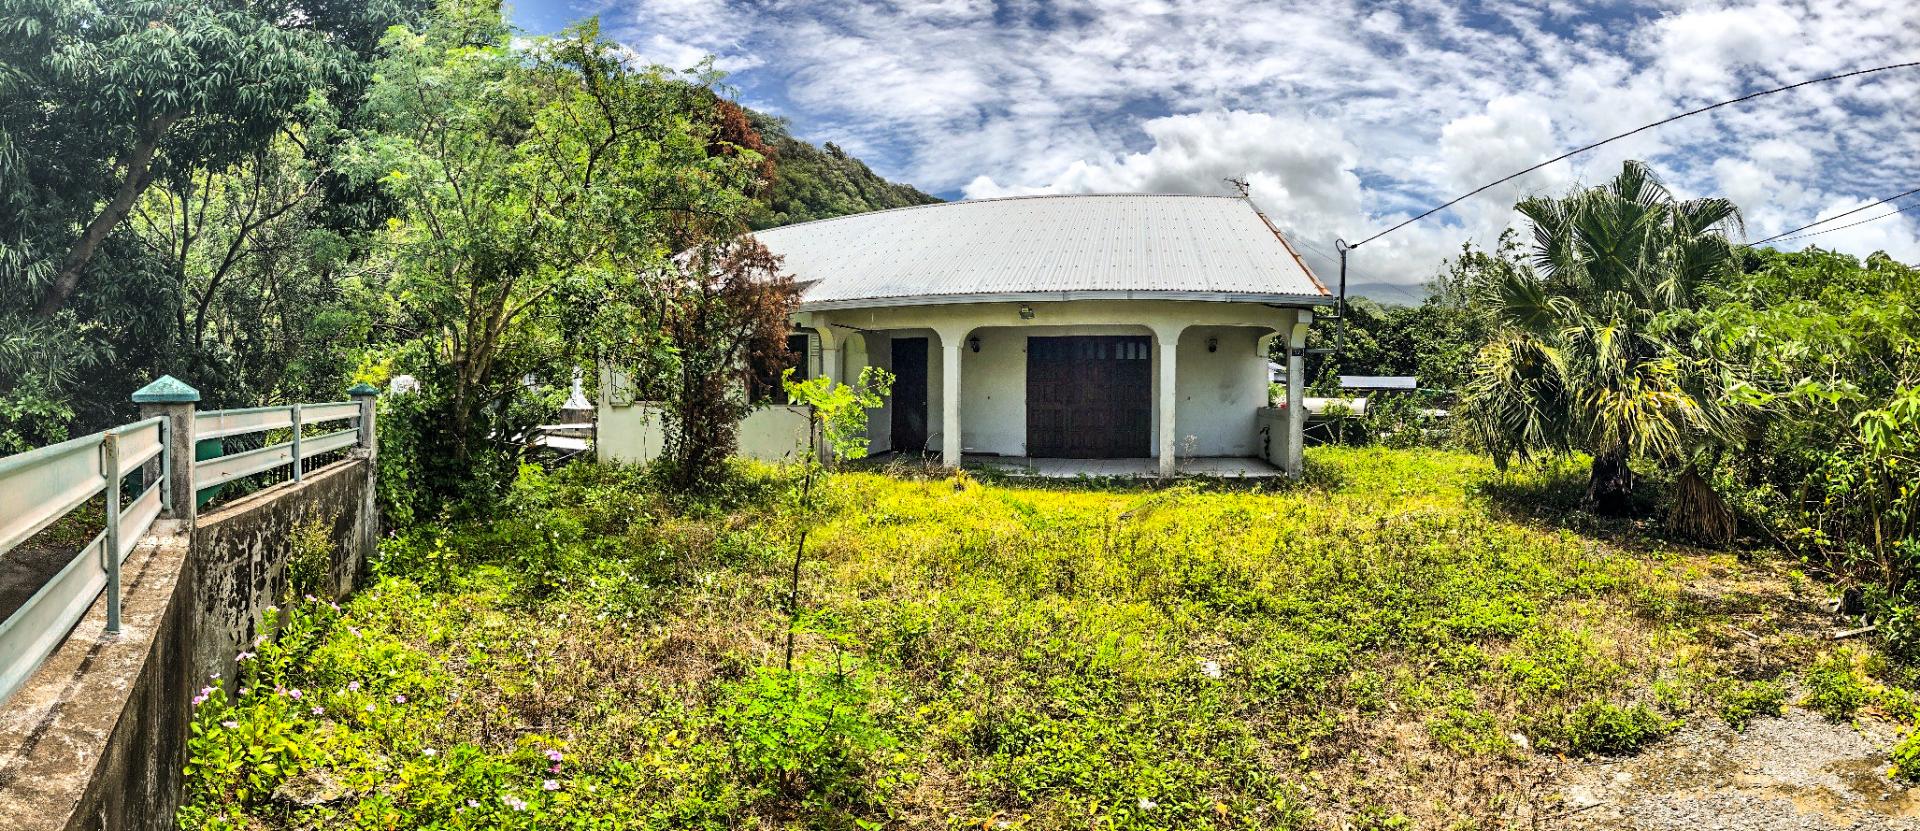 Maison F5/6 à rénover sur SAINT JOSEPH (Réunion)